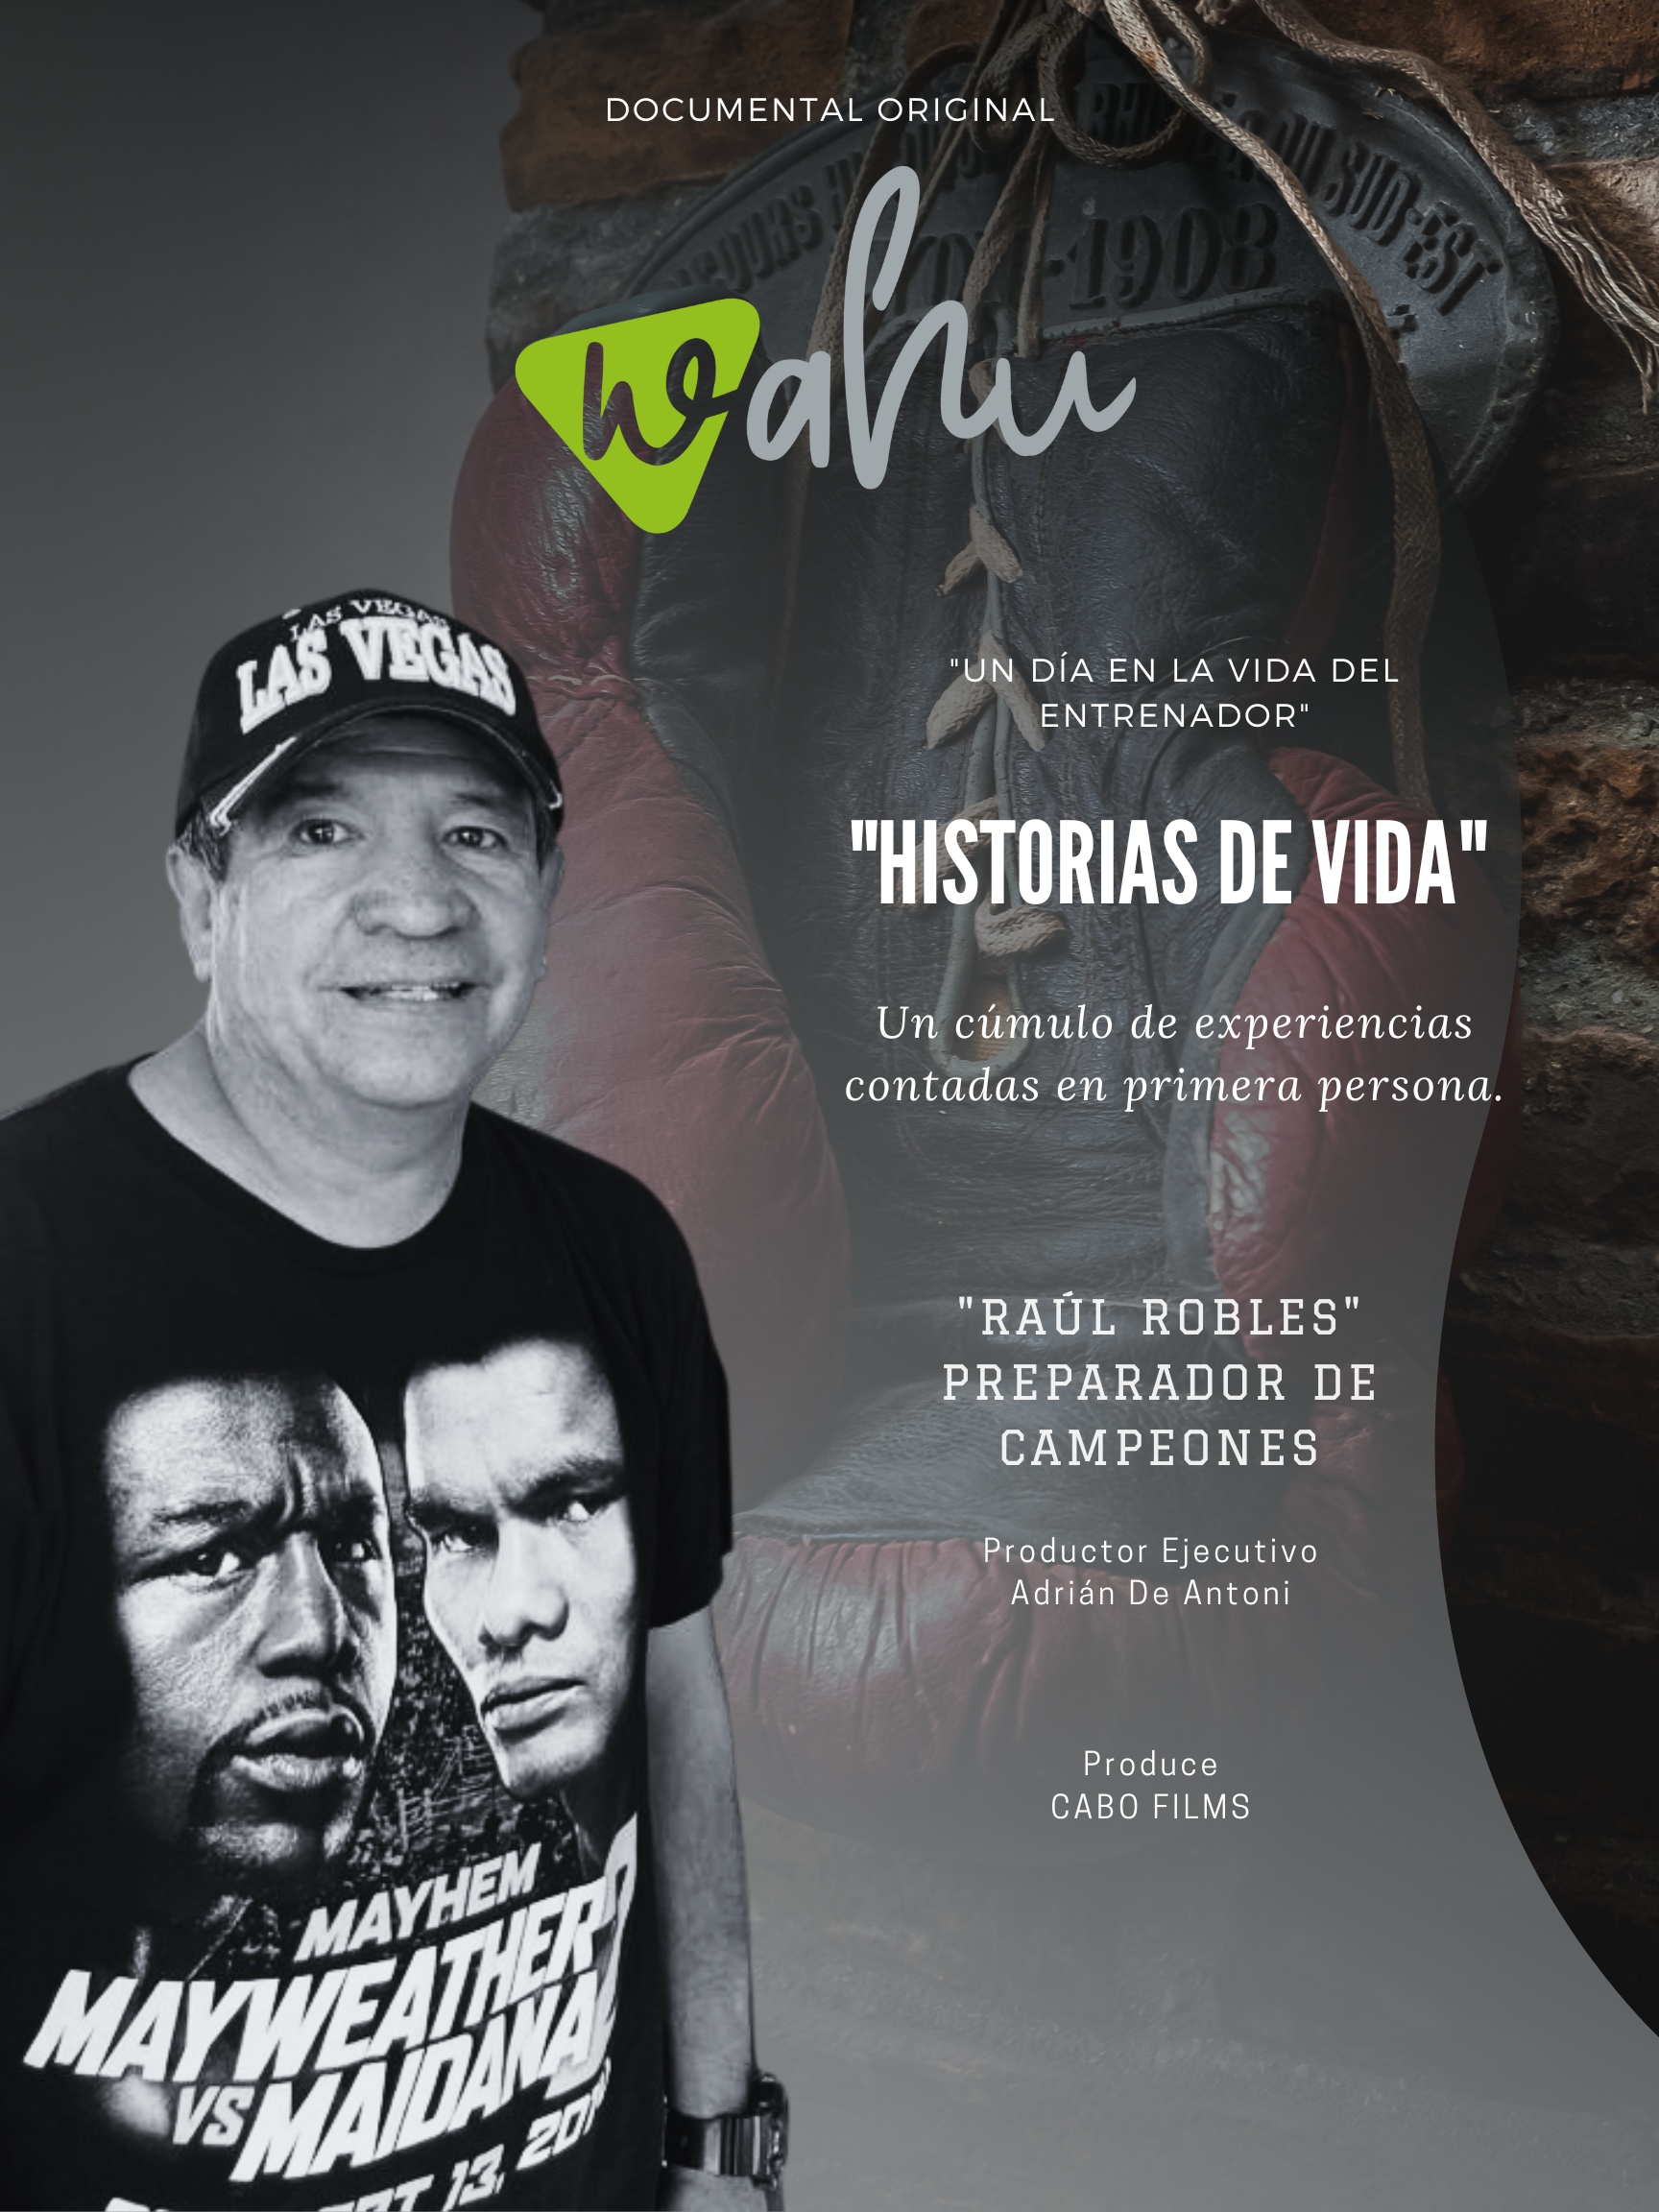 Raúl Robles thumbnail image